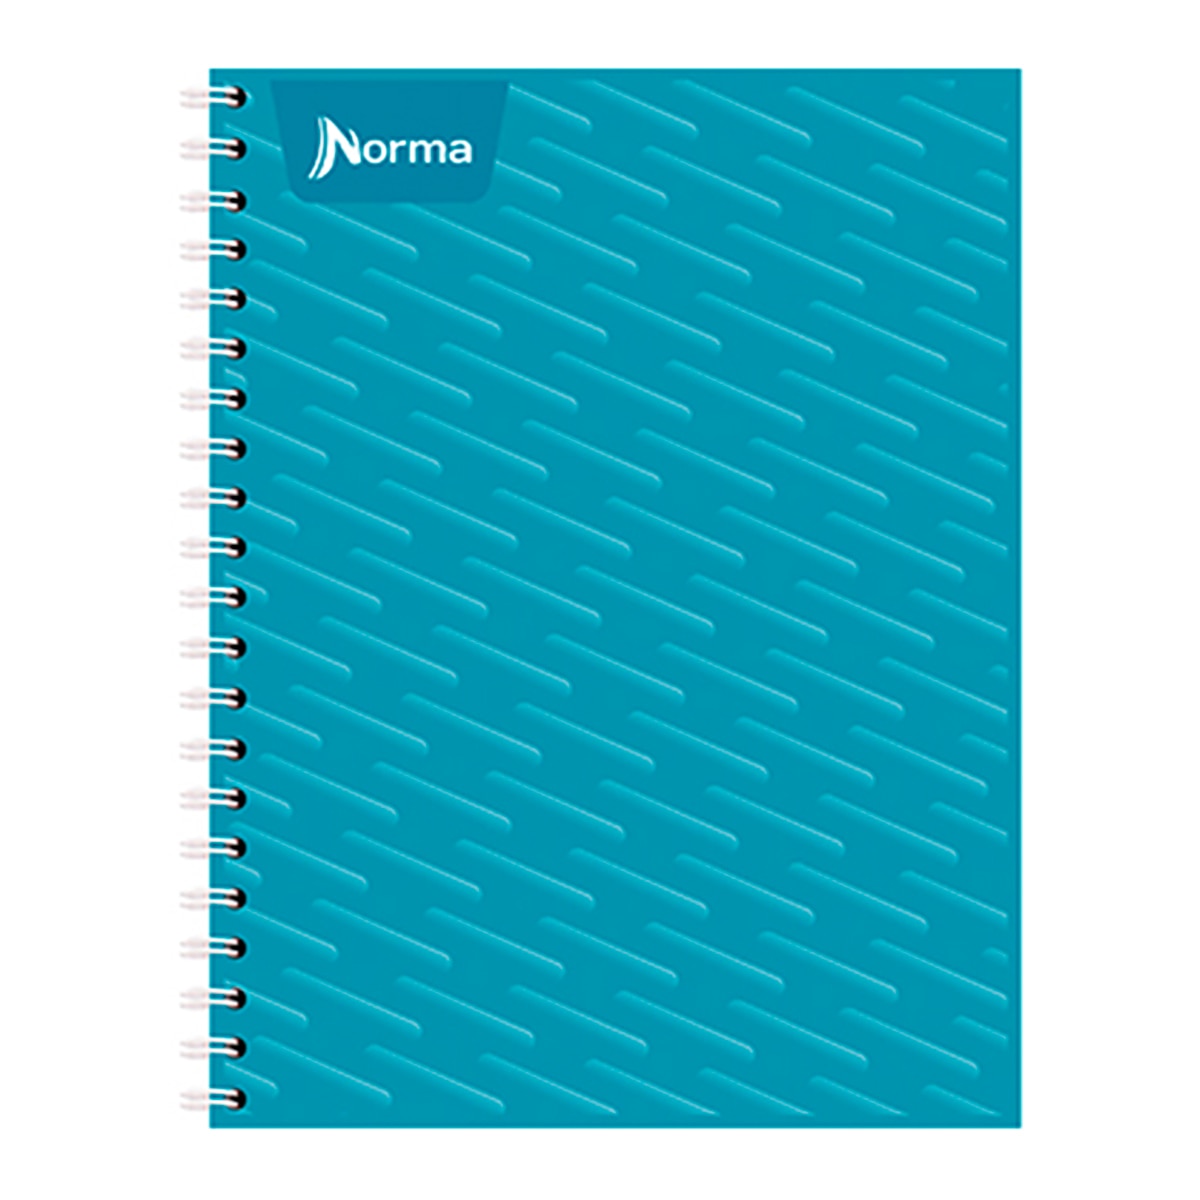 Norma cuaderno profesional 100 hojas